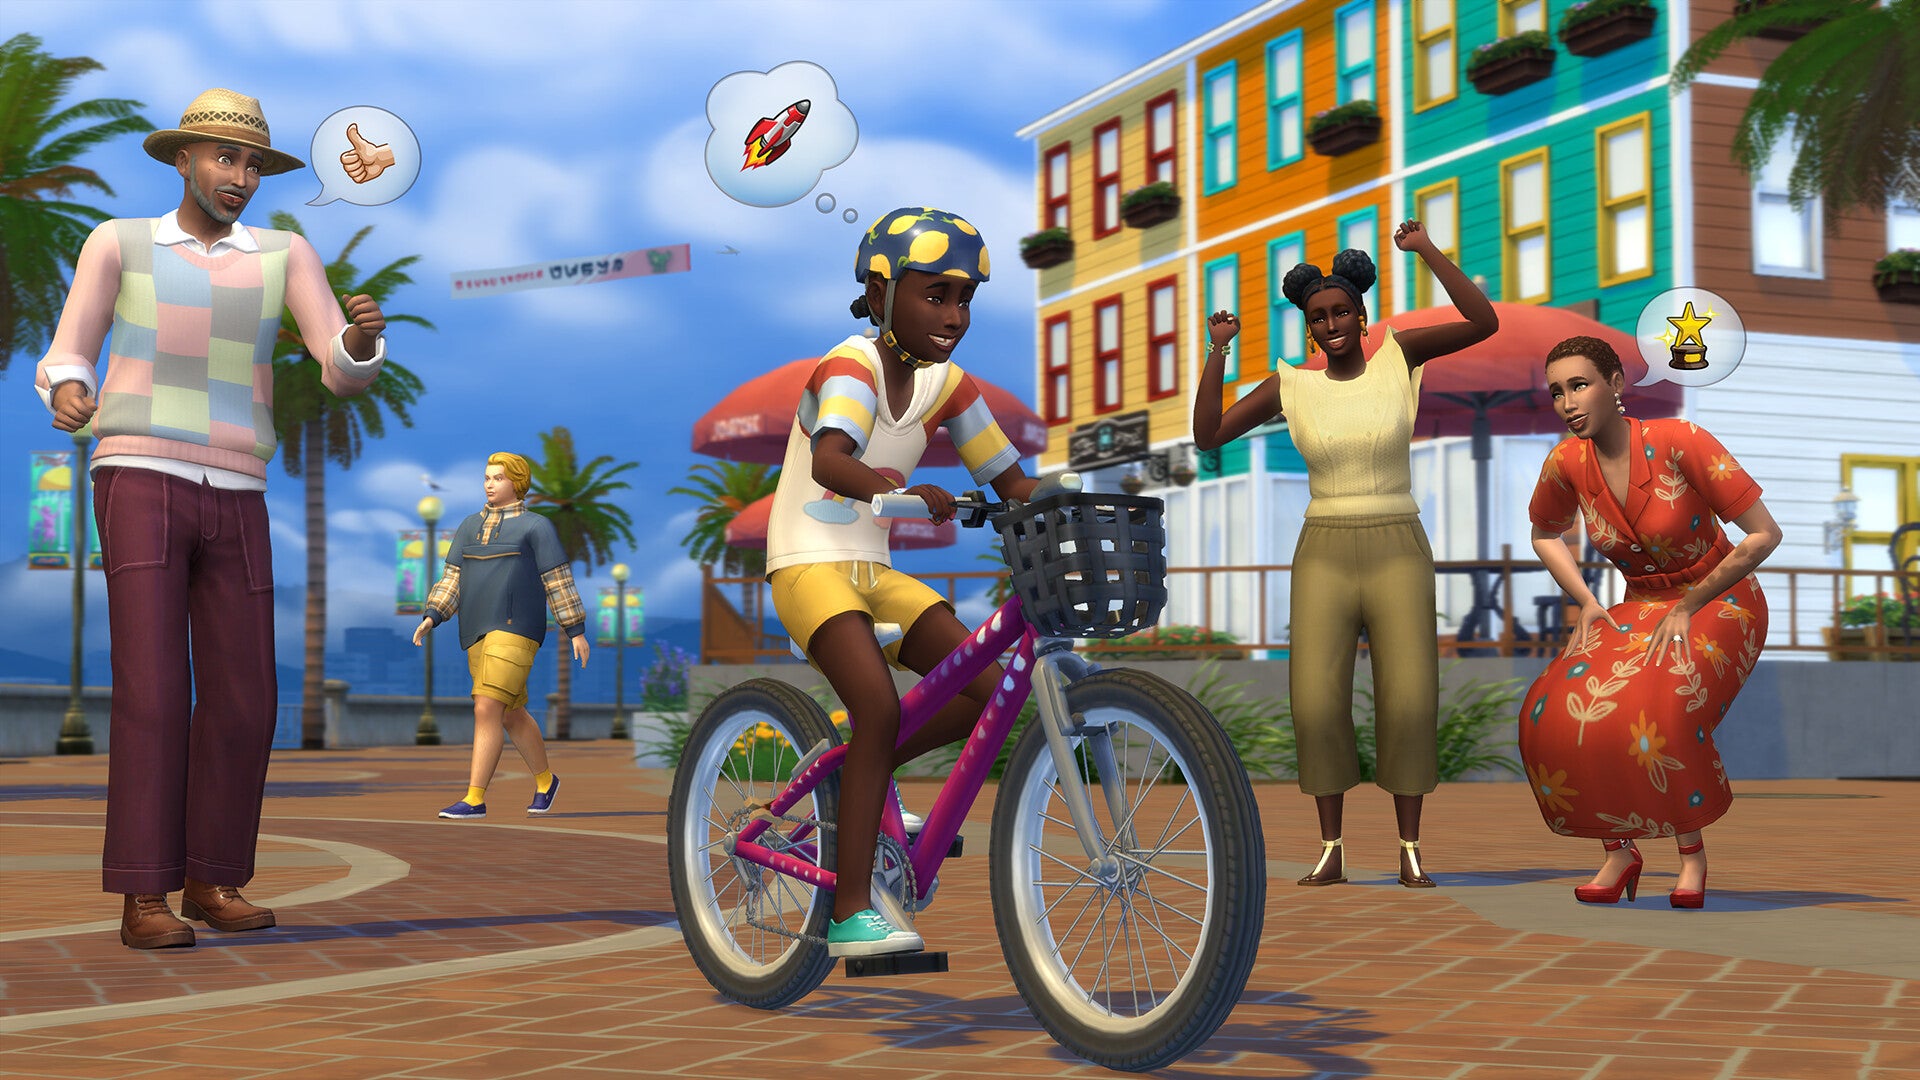 Mở rộng Growing Together của The Sims 4 sẽ đưa người chơi vào những trải nghiệm mới, thú vị và đầy thử thách. Với các tính năng mới như không gian sống chung, đồ đạc trang trí và quần áo hiện đại, bạn sẽ được trải nghiệm những khoảnh khắc đáng nhớ trong cuộc sống ảo của mình. Hãy cùng khám phá mở rộng này ngay hôm nay!